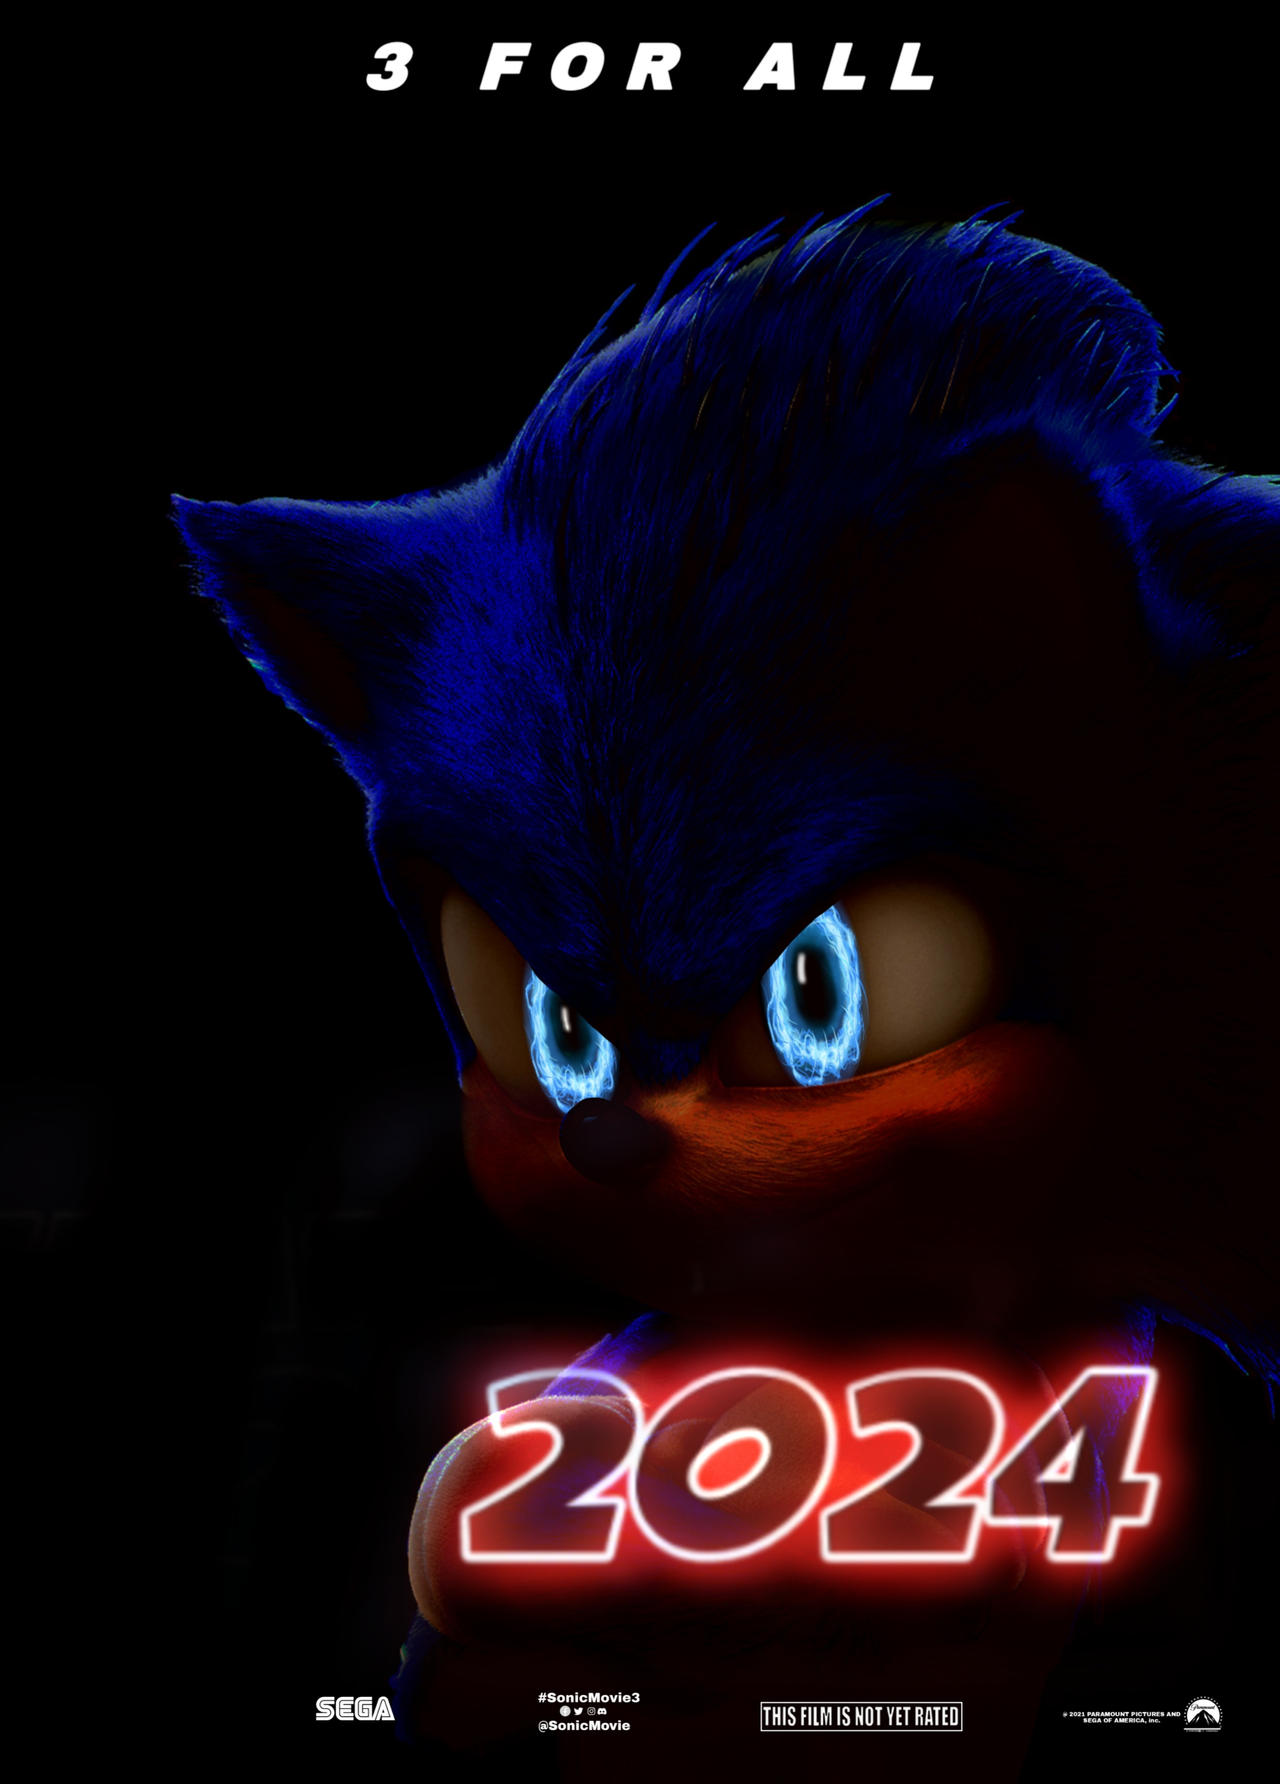 Sonic Movie 3 Poster Ver.2 by tailsgene19 on DeviantArt